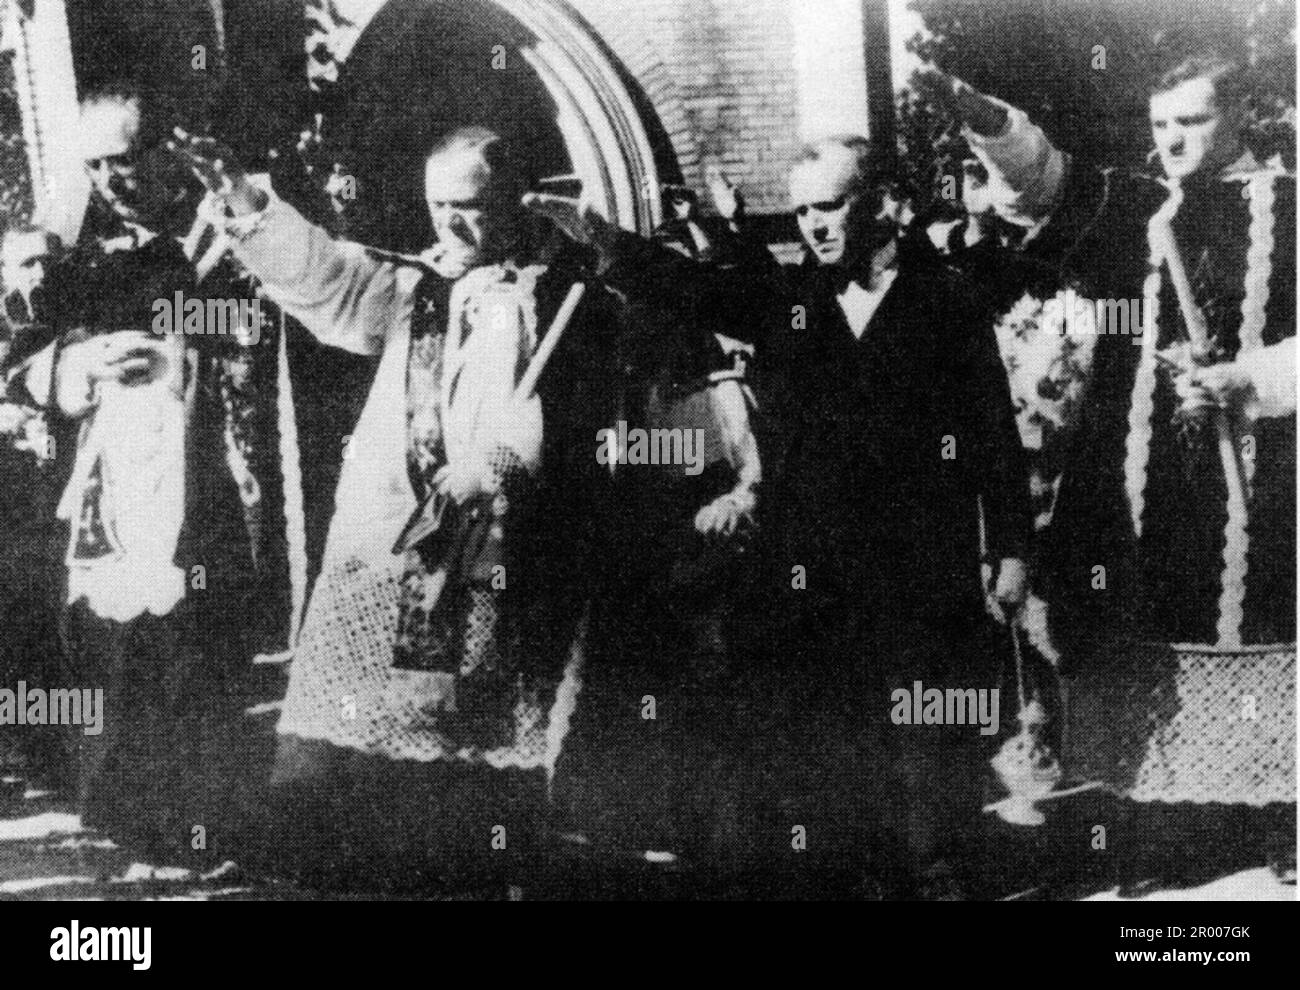 I sacerdoti tedeschi Sudeten salutano i nazisti per accogliere l'arrivo delle truppe tedesche nel Sudentenland. Dopo l'annessione dell'Austria, Hitler chiese di ricevere la regione dei Sudeti in Cecoslovacchia. Alla conferenza di Monaco del settembre 1938 le potenze occidentali si sono accordate su questo e i nazisti hanno occupato l'area. Poco tempo dopo Hitler ruppe la sua promessa e invase il resto della Cecoslovacchia prima di rivolgere la sua attenzione alla Polonia. Foto Stock